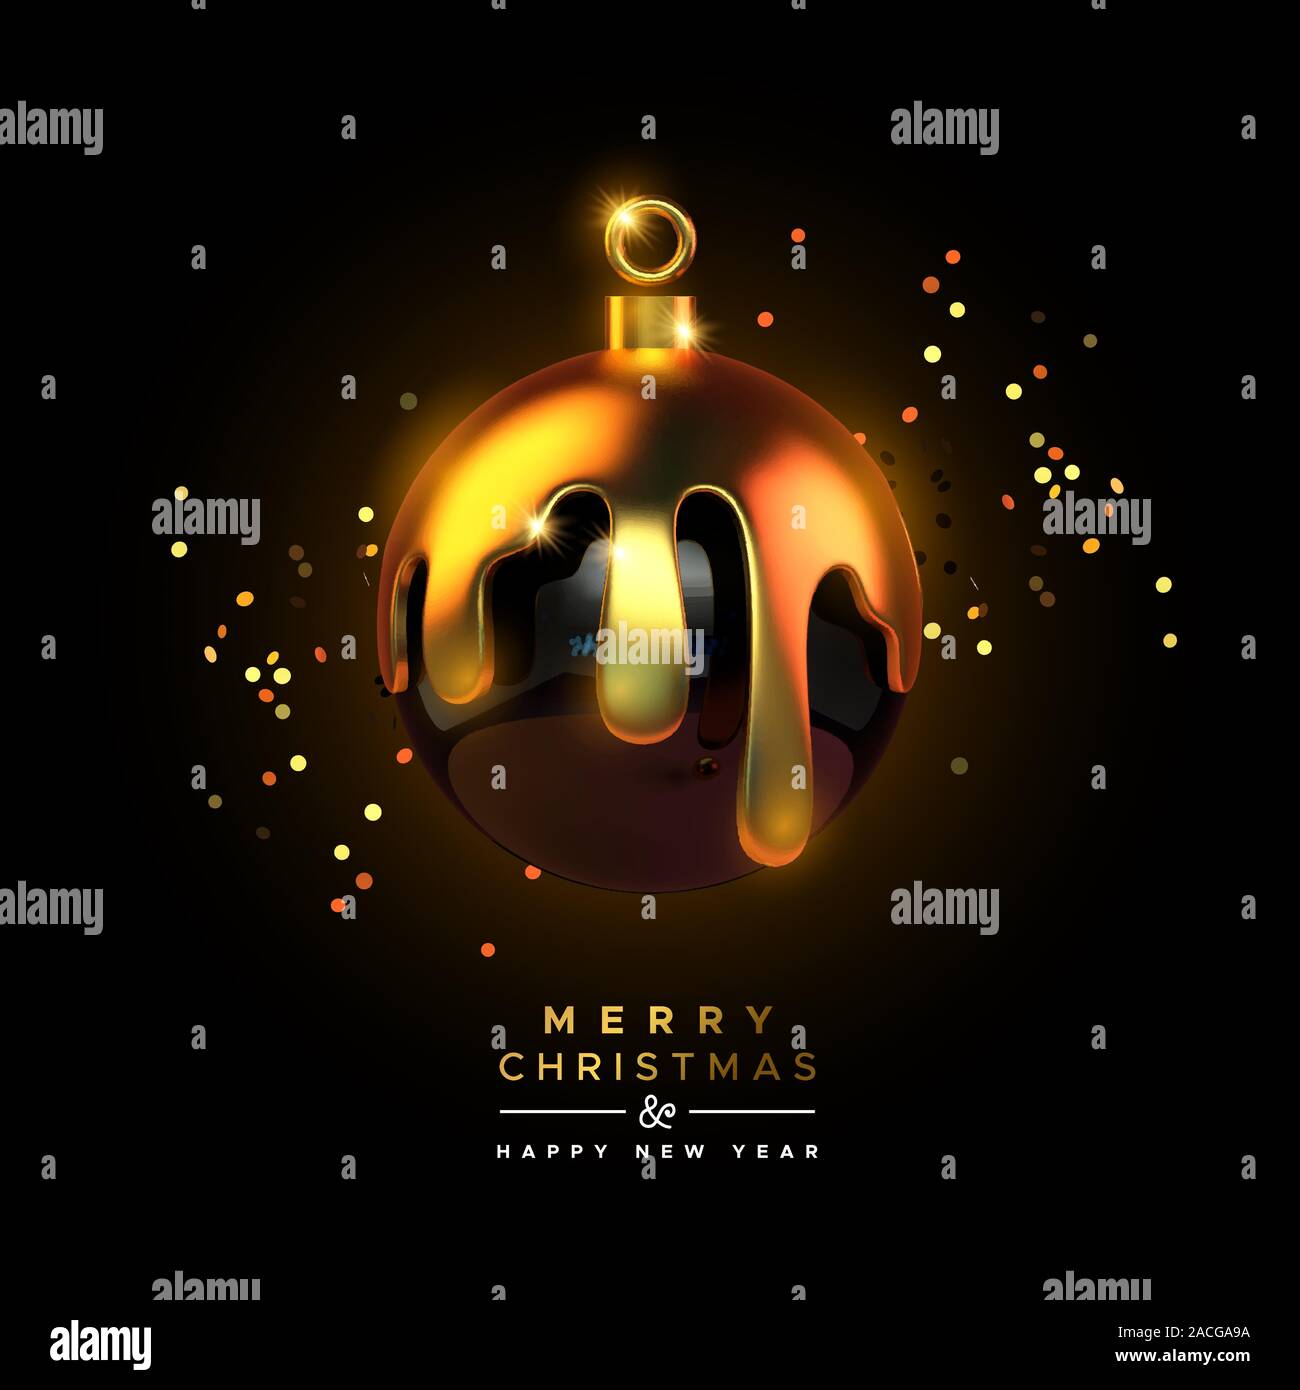 Feliz Navidad Feliz Año Nuevo tarjeta de felicitación de lujo negro bola de adorno ornamento en Estilo 3D realistas con oro fundido y parte confetti. Elegante c Ilustración del Vector